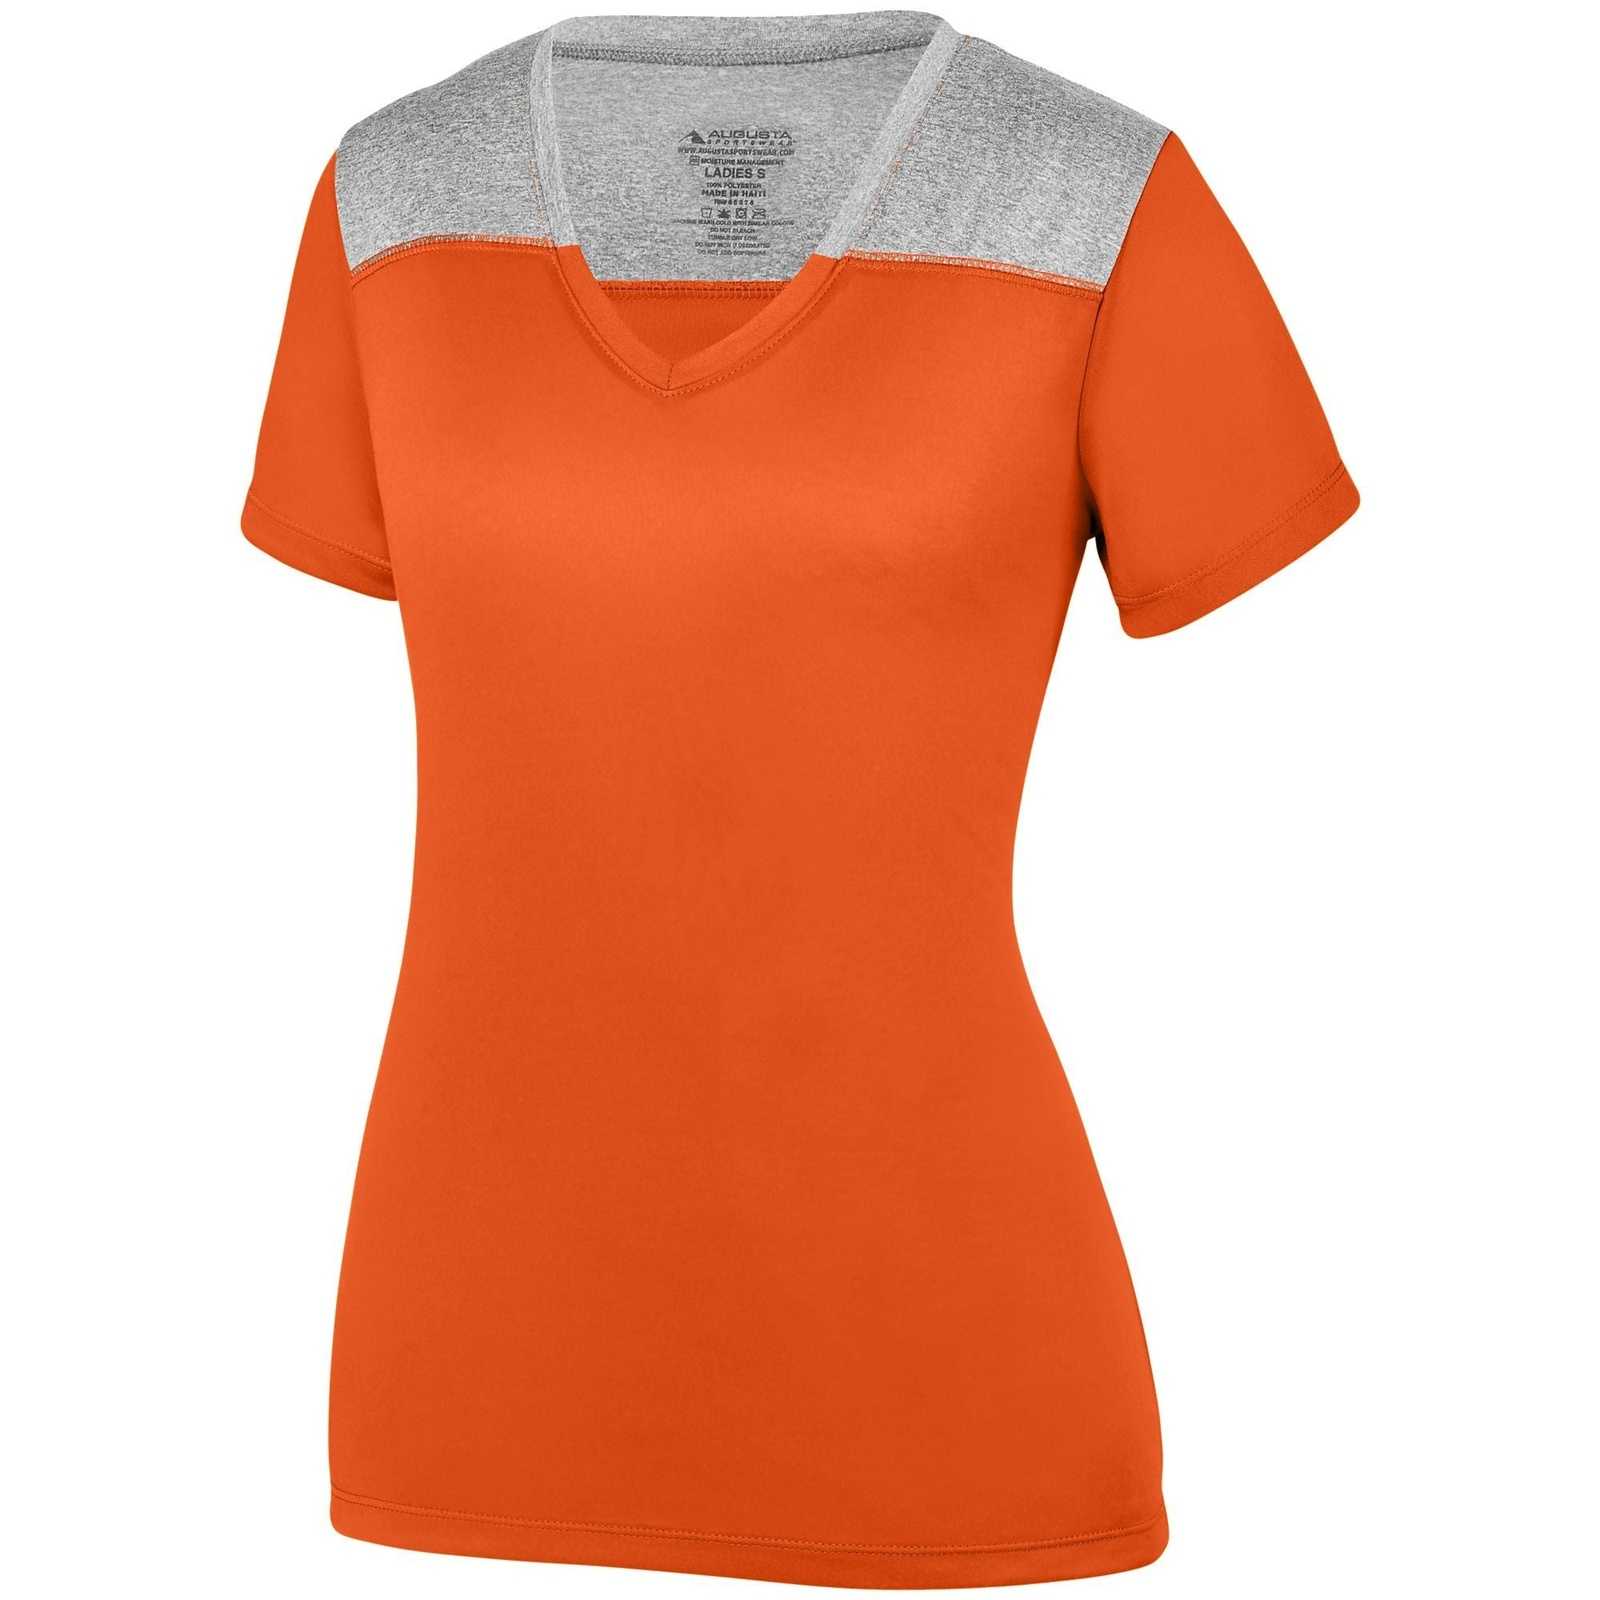 Augusta 3057 Ladies Challenge T-Shirt - Orange Graphite Heather - HIT a Double